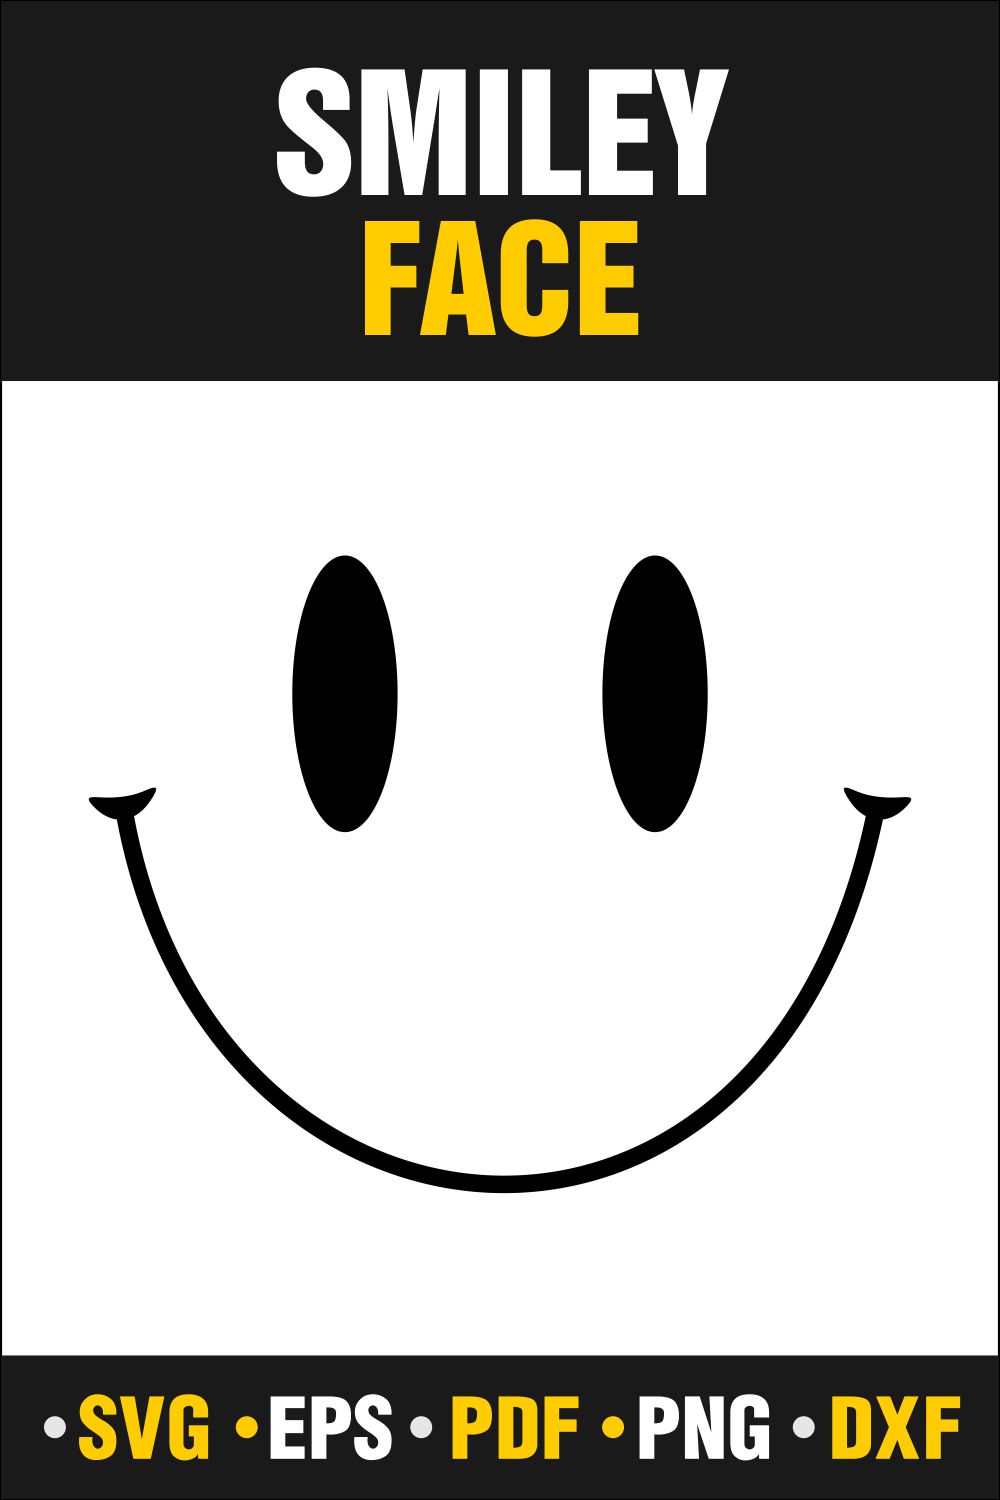 Smiley Face SVG Design pinterest image.